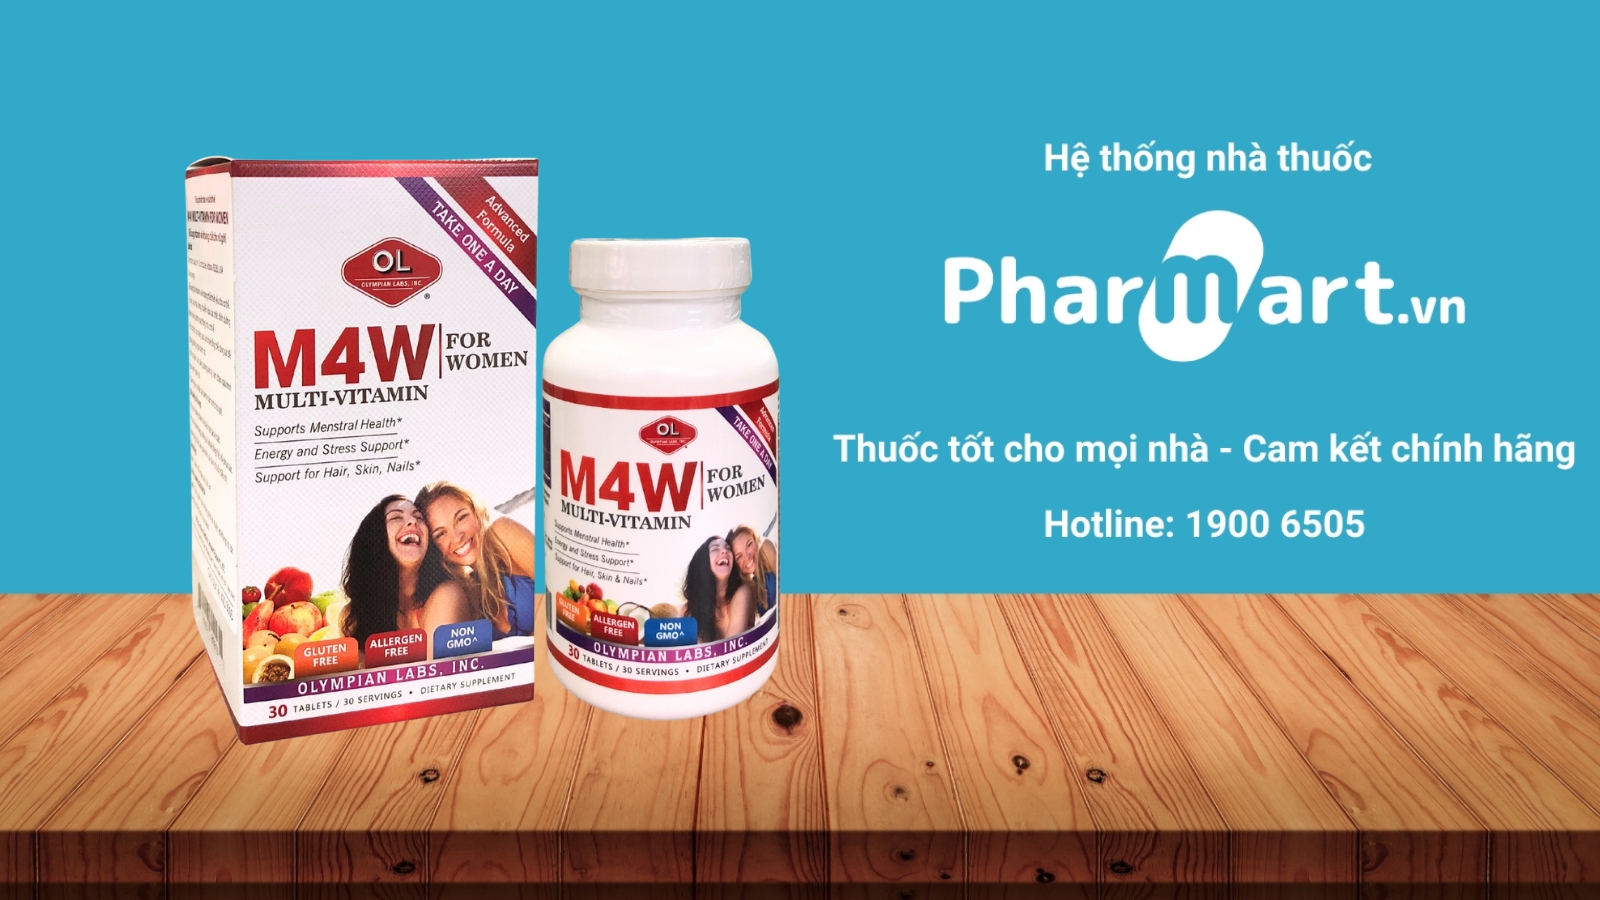 Mua ngay M4W Multi chính hãng tại Pharmart.vn